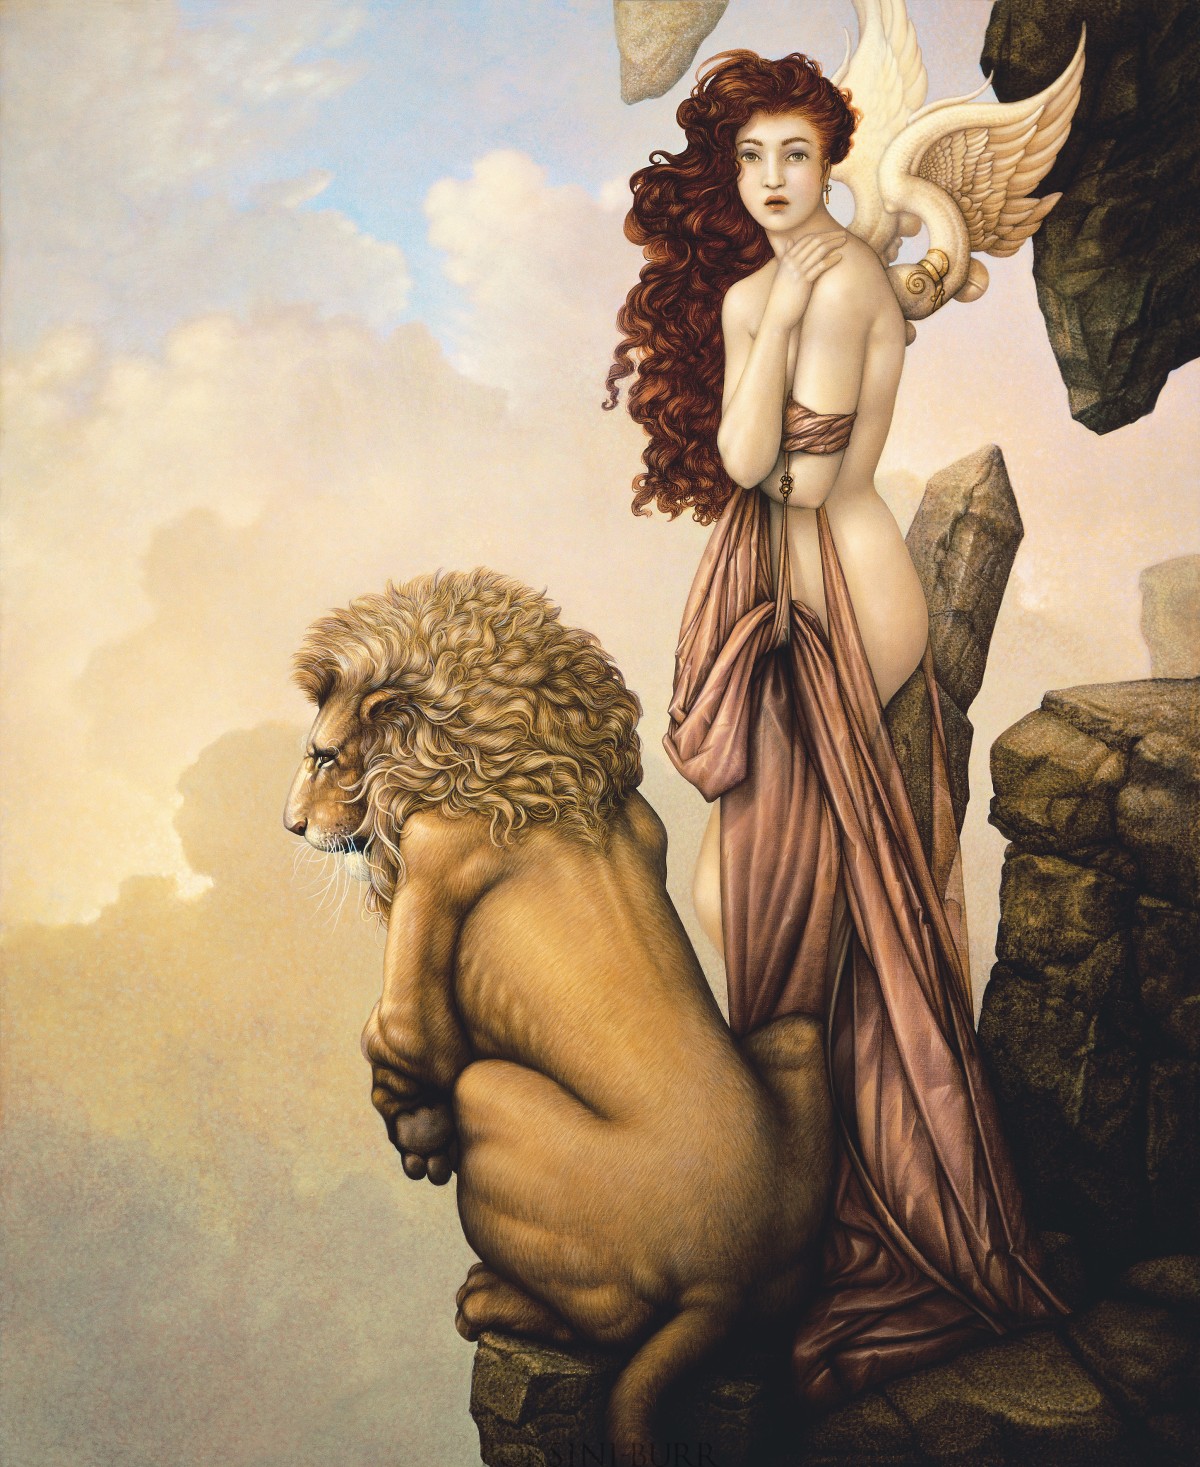 "The Last Lion" Fine Art Edition on Canvas by Michael Parkes